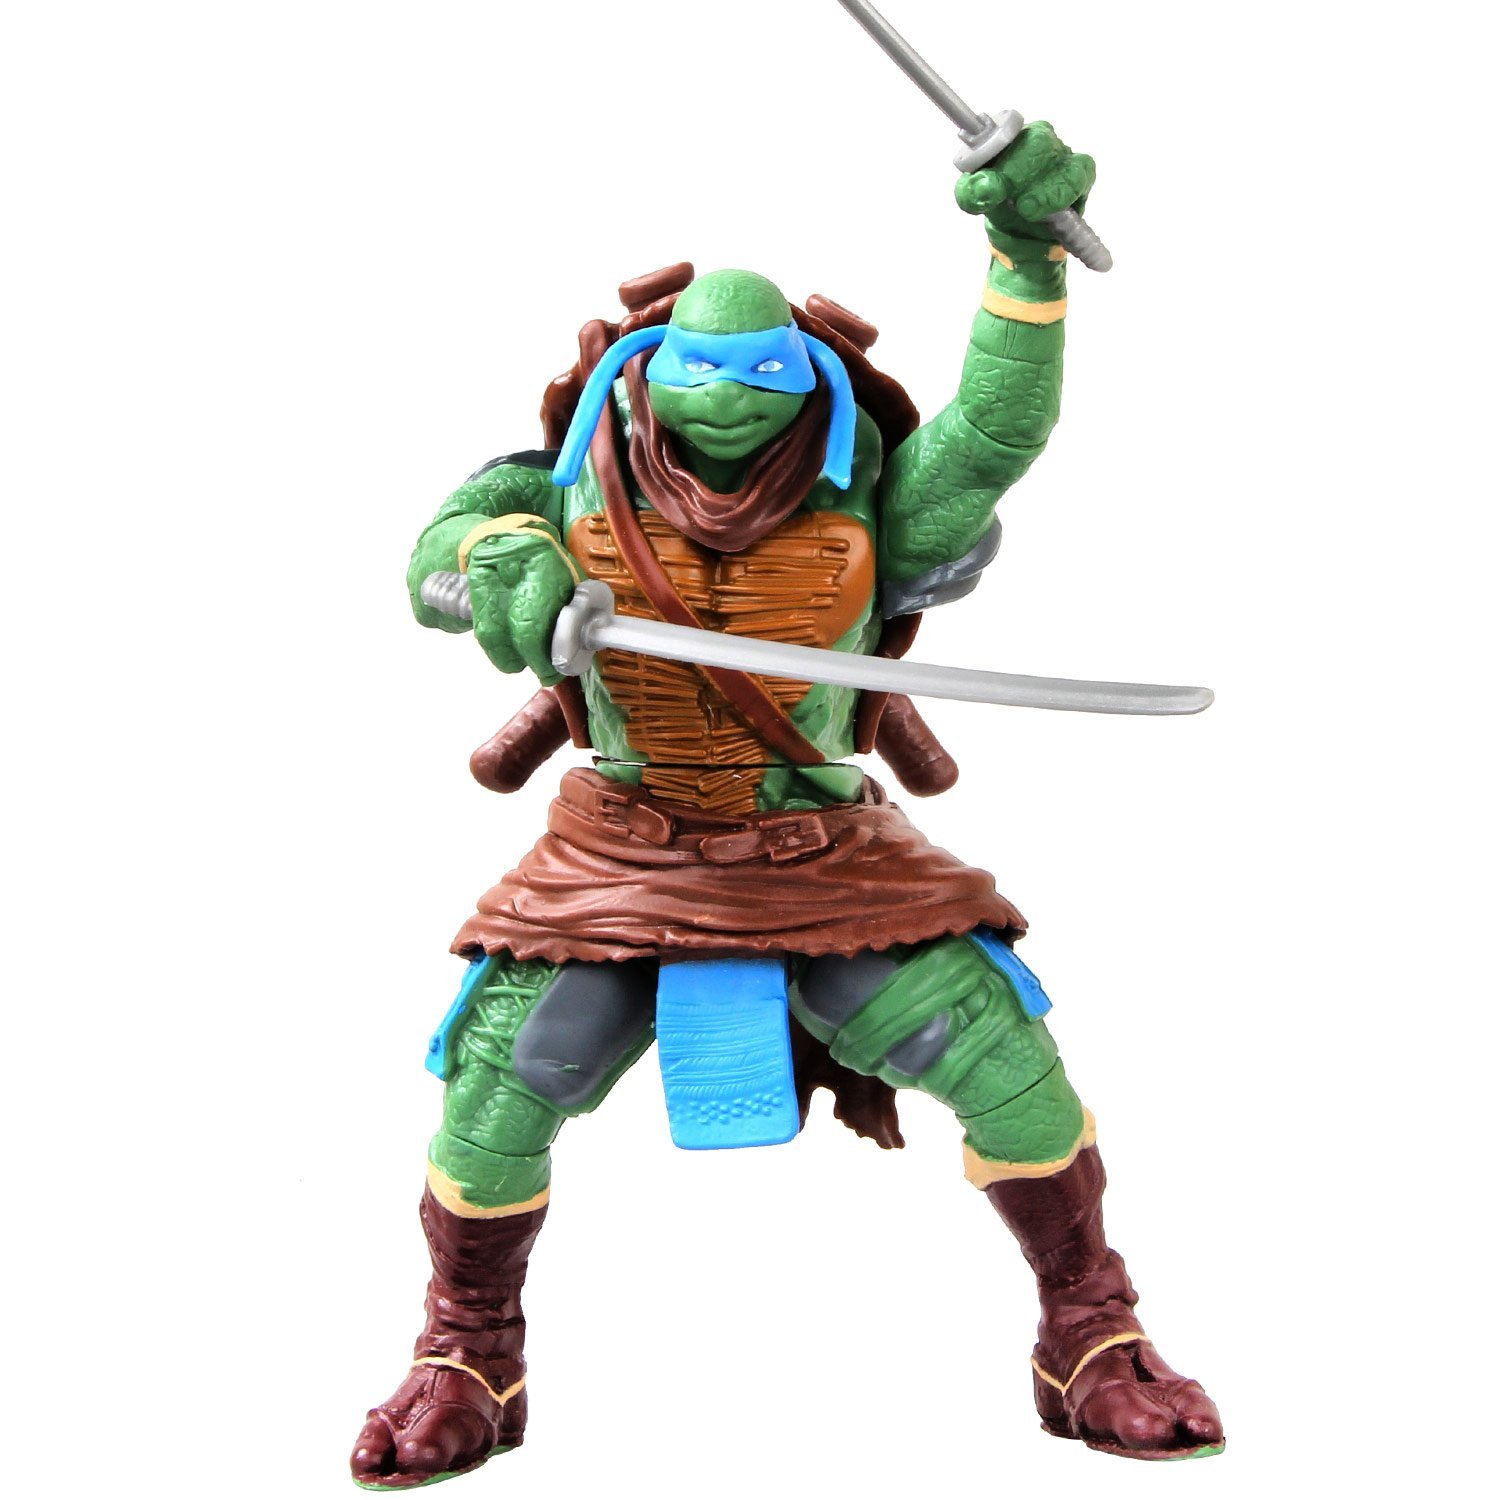 Teenage Mutant Ninja Turtles Movie Deluxe Leo Action Figure - image 1 of 3